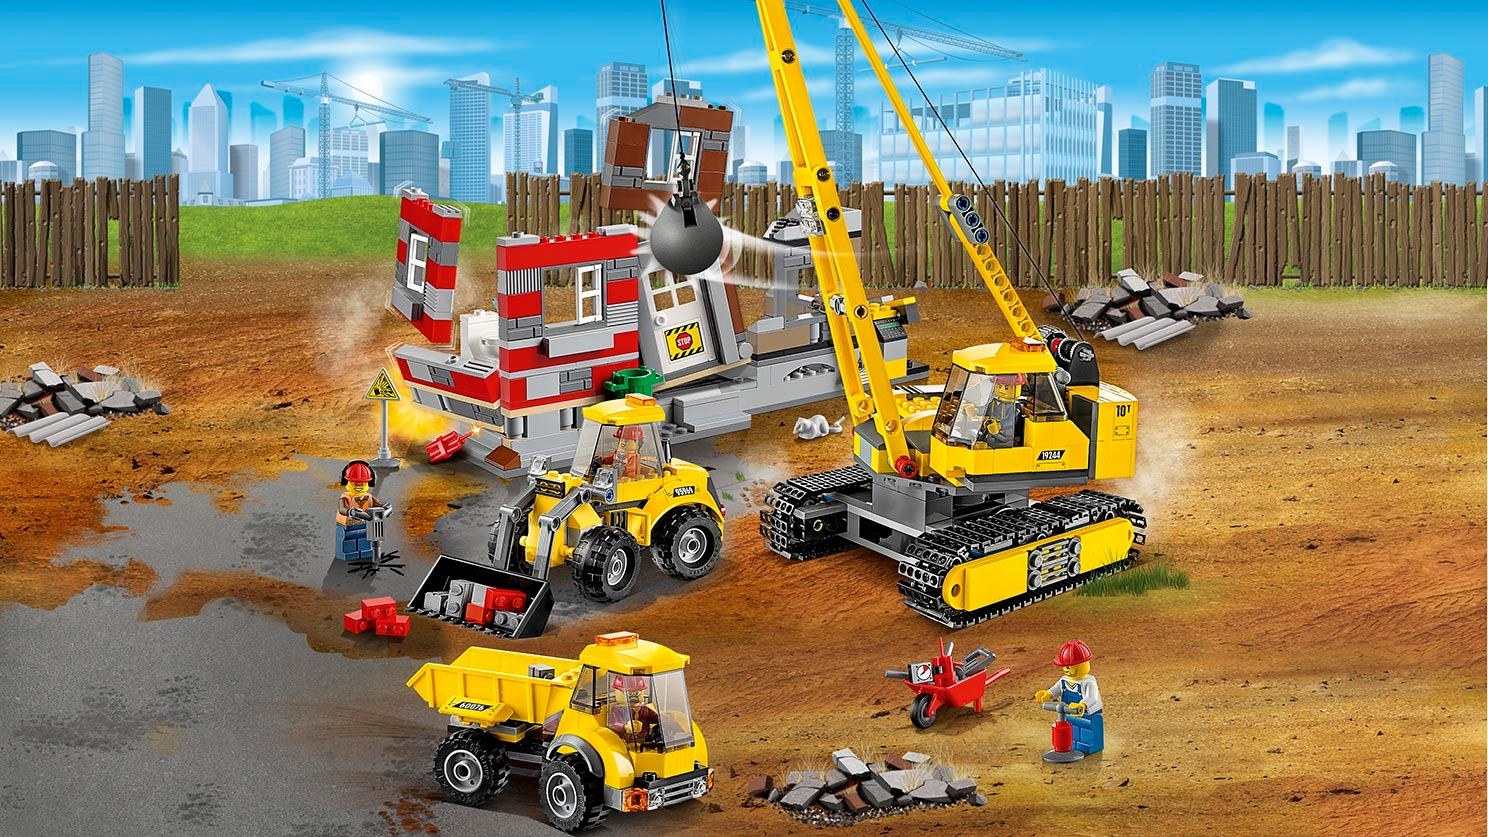 City Builder - LEGO.com for kids